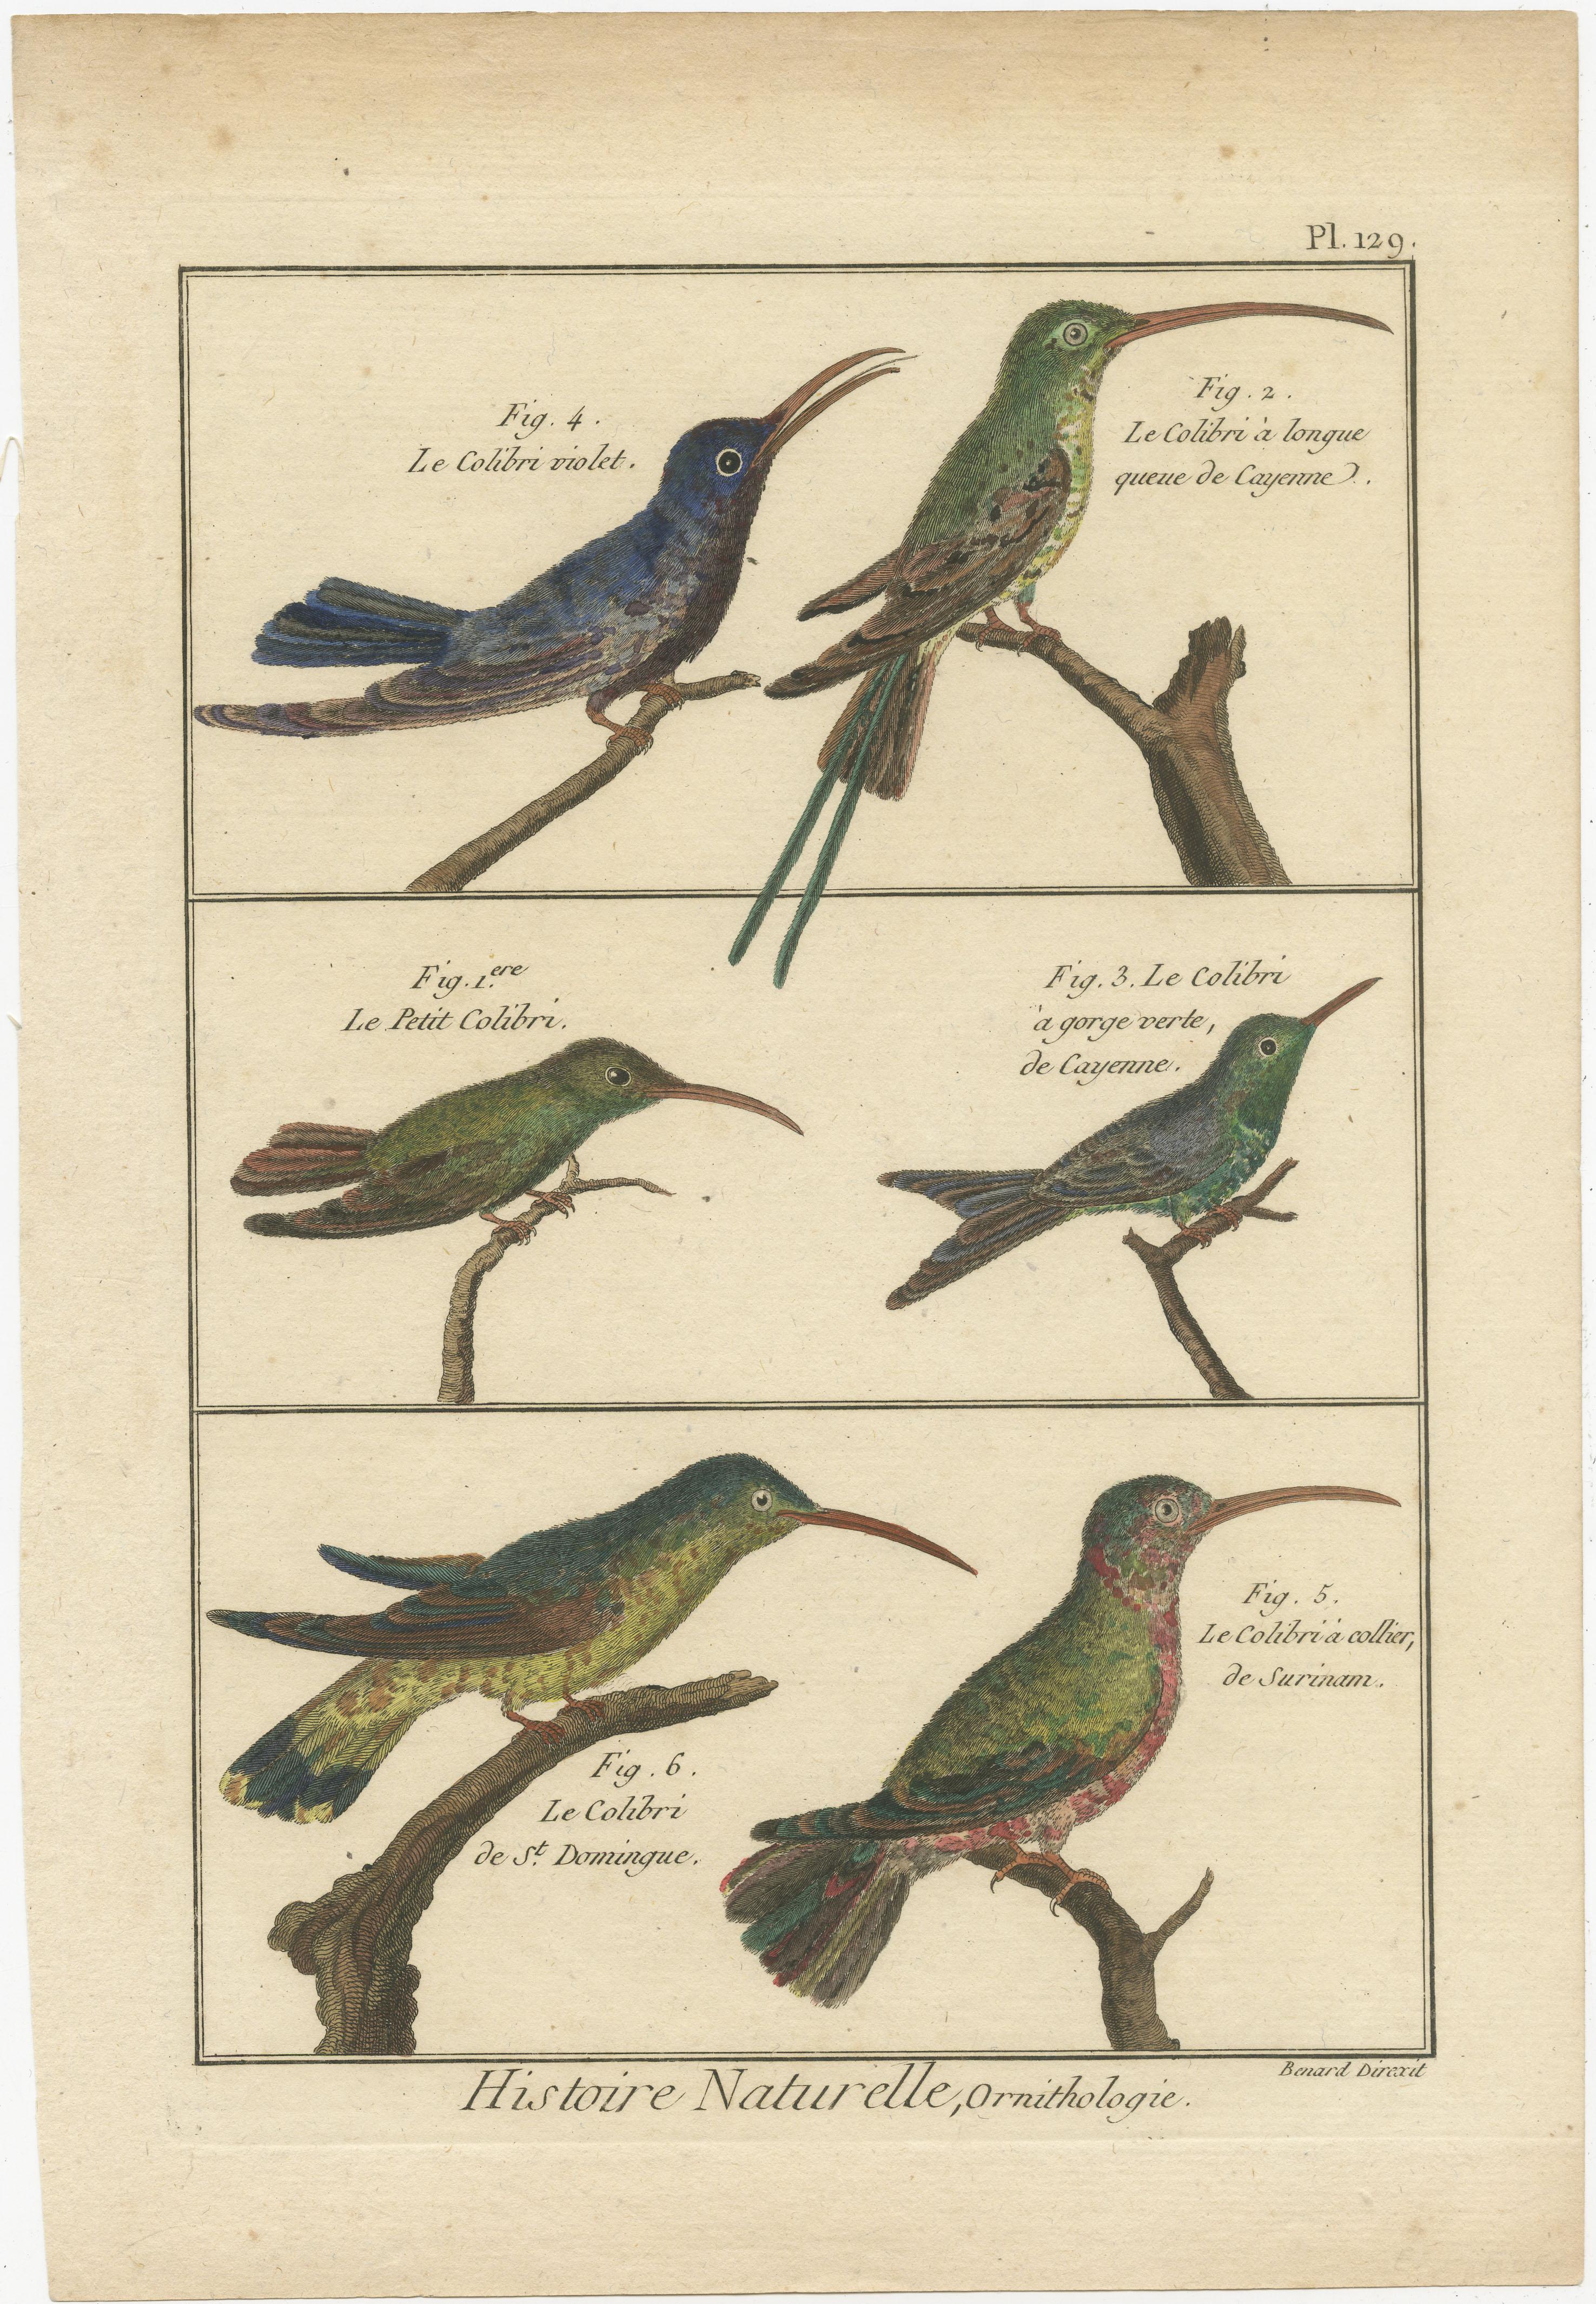 Eine authentische, perfekte und helle, ursprünglich handkolorierte Illustration von 6 Colibri's, auf Pergamentpapier (Kupferstich). Es hat einen feinen Glanz durch das authentisch aufgetragene Eigelb als Firnis. Der Künstler ist Robert Bernard